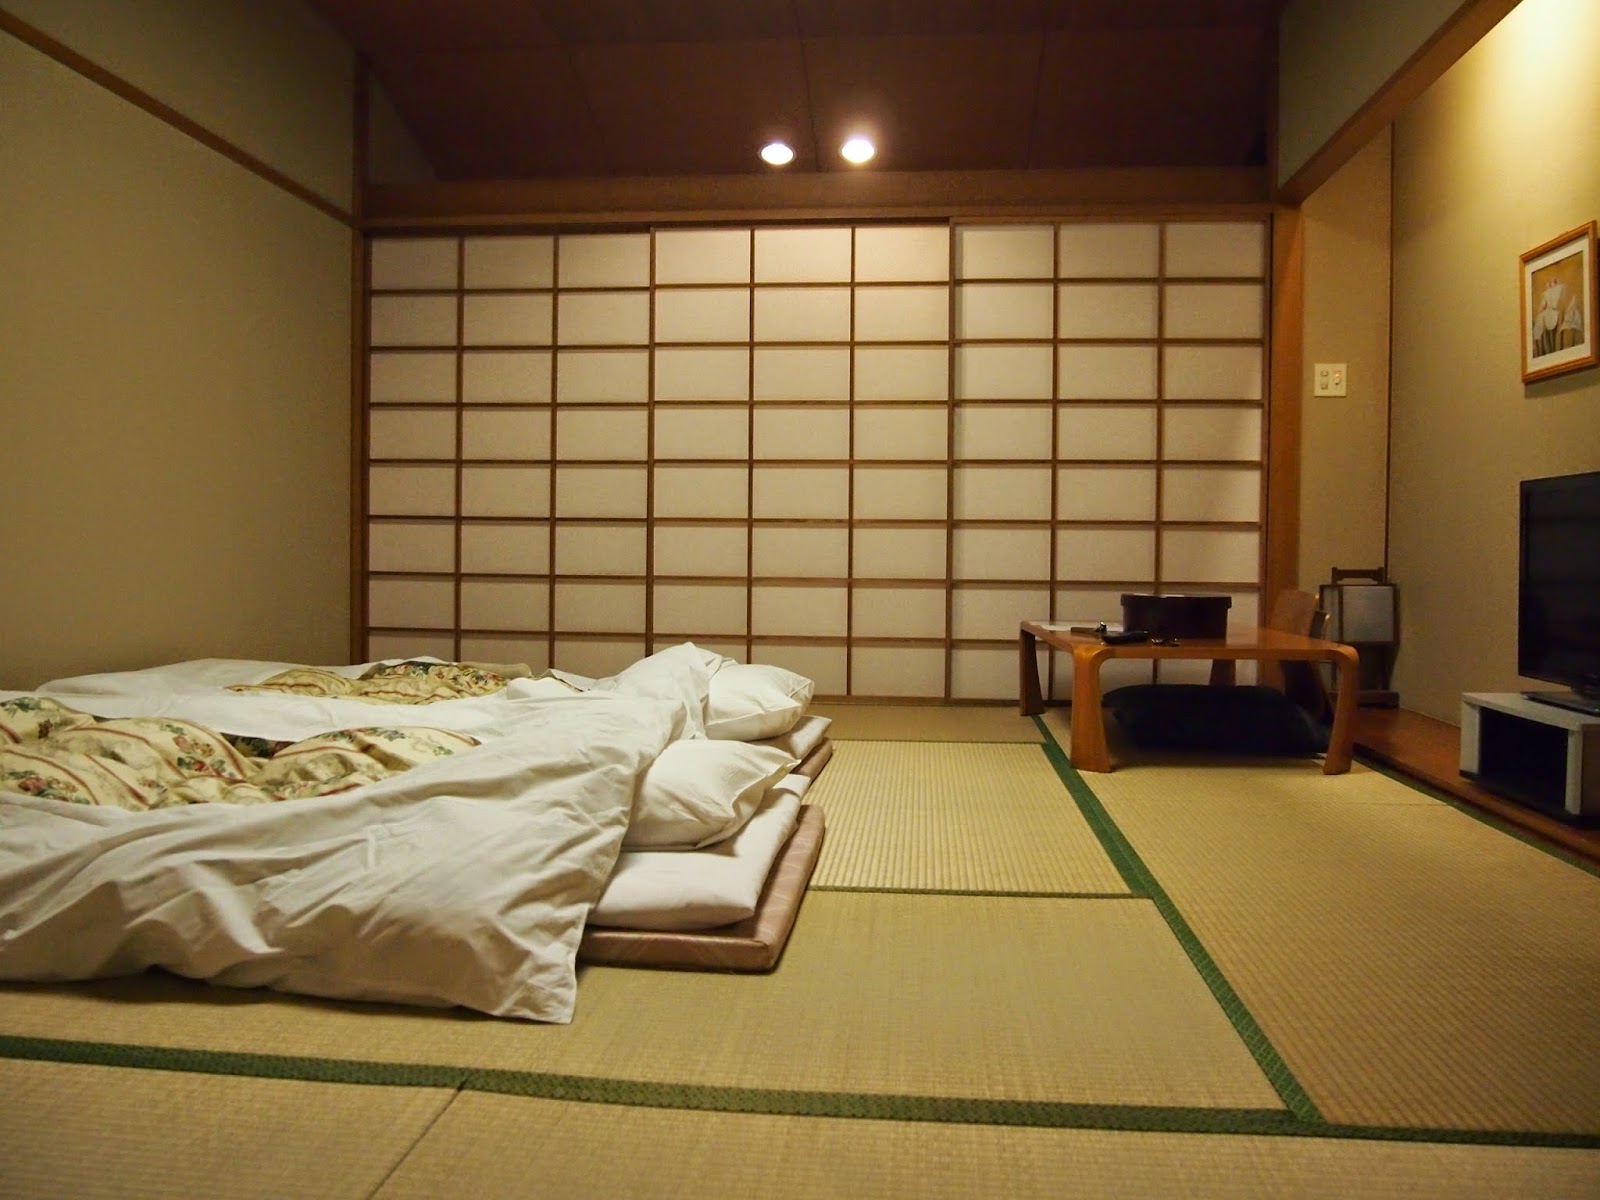 Снимка на интериора на спалнята в японски стил